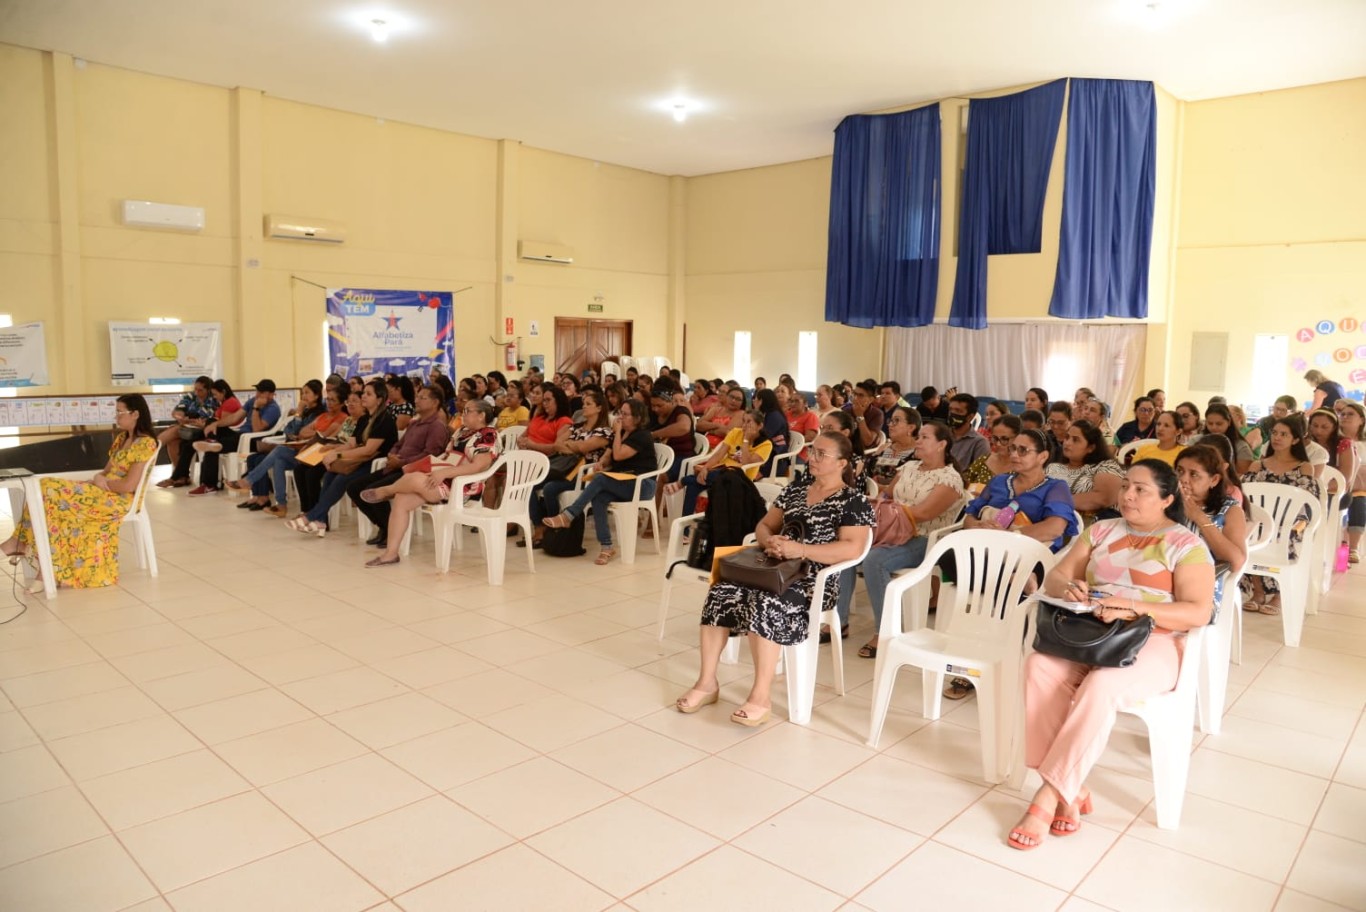 Encerrado o primeiro módulo de formação do Alfabetiza Pará voltado para professores, gestores e pedagogos da rede municipal